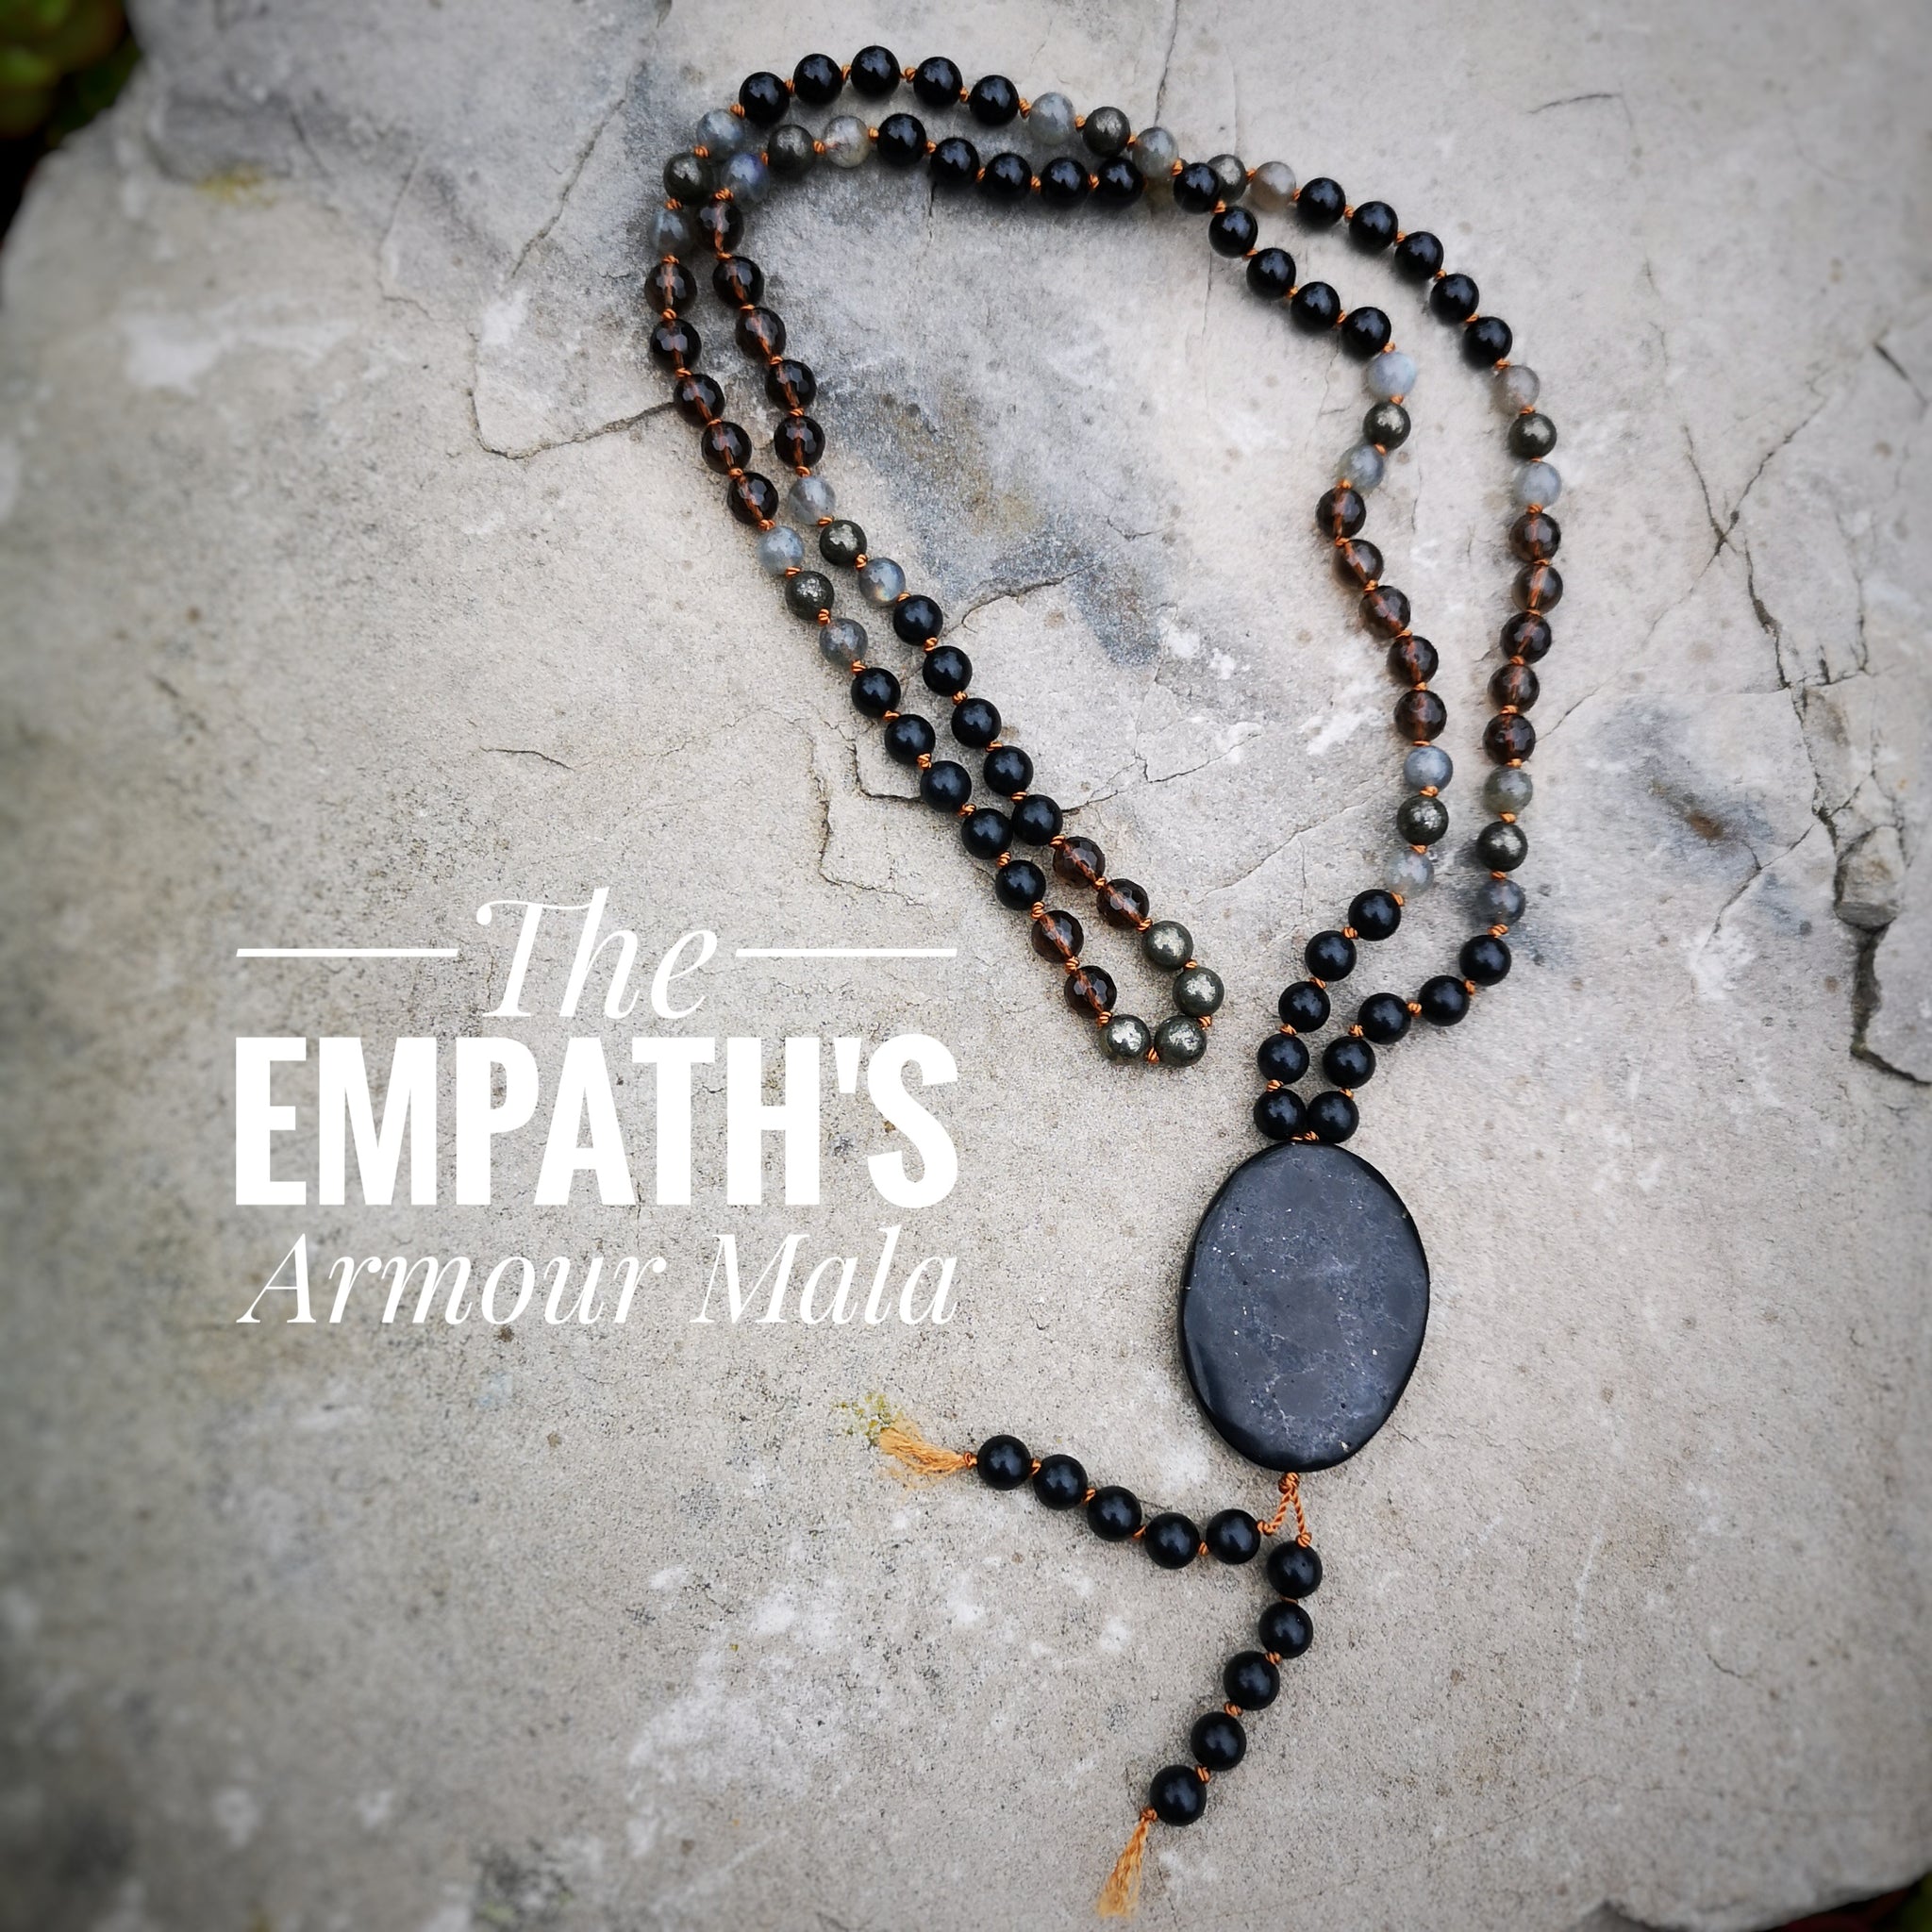 The Empath's Armour Mala Necklace / Shungite, Smoky Quartz, Black Tourmaline, Pyrite & Labradorite provide an armour to protect empaths